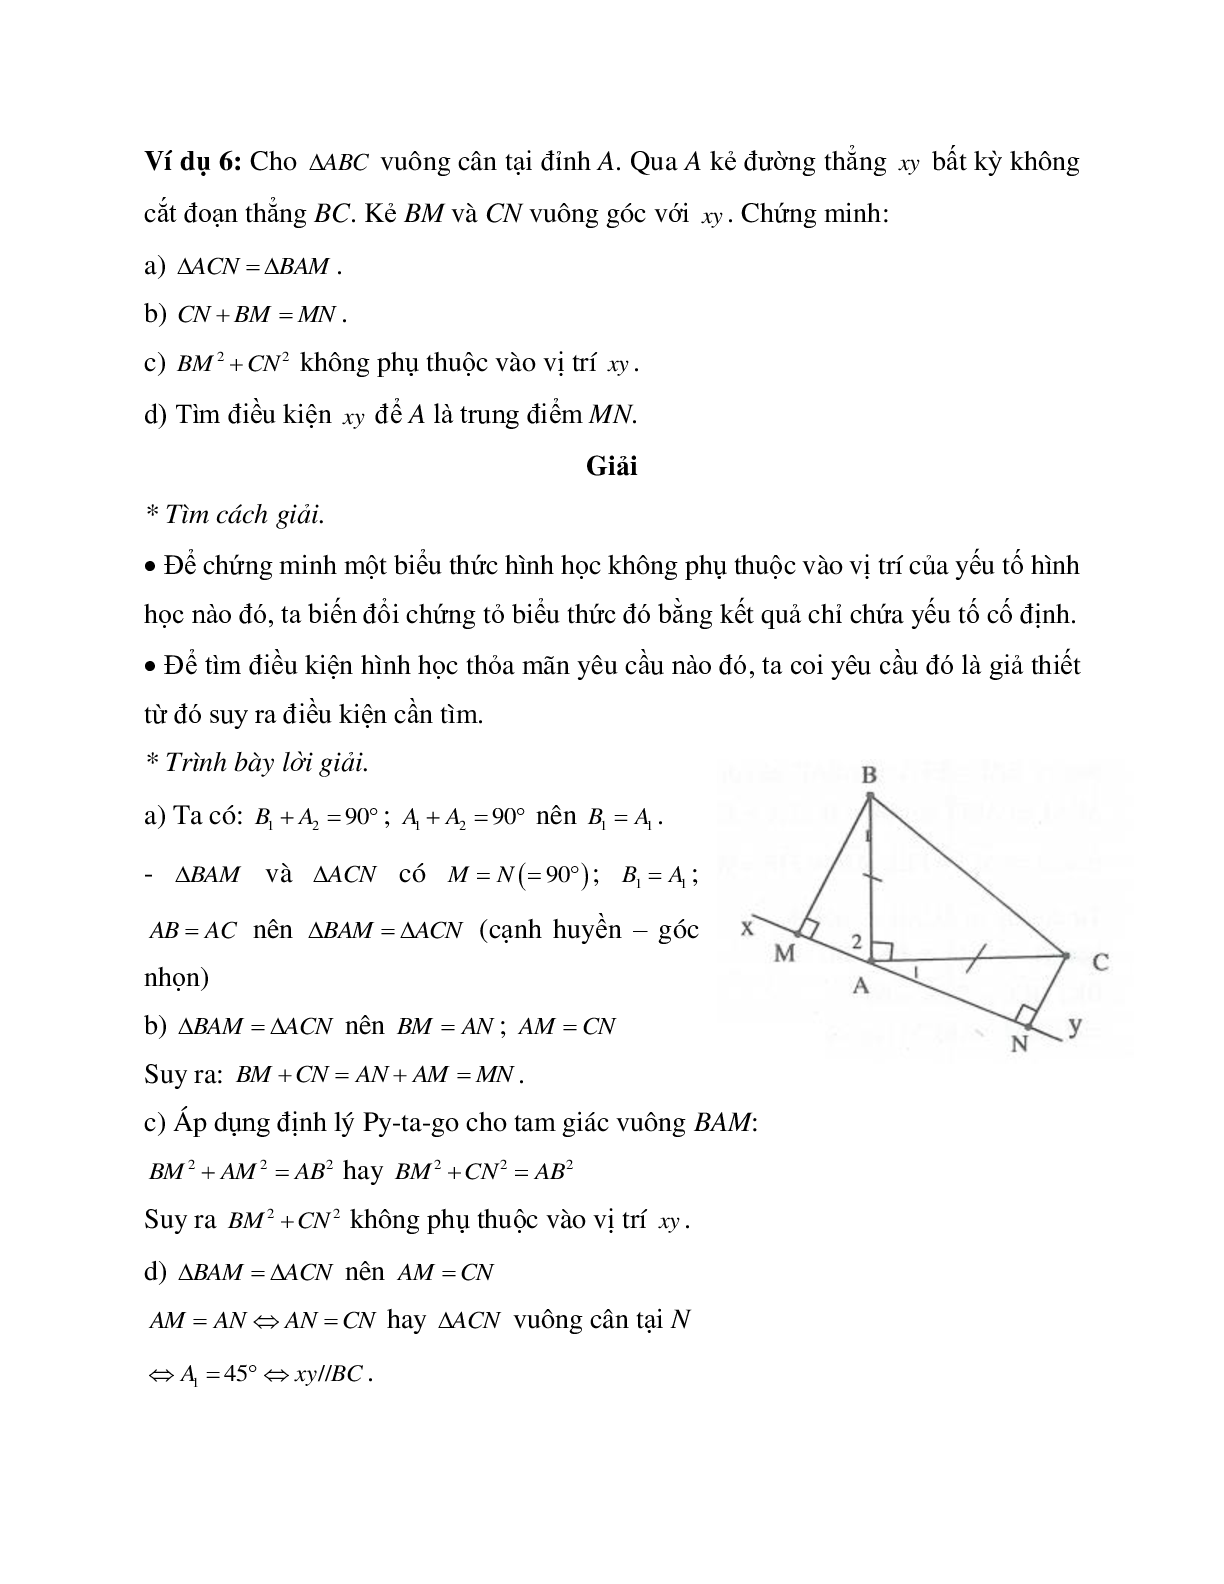 Những bài tập điển hình về Định lý Pi-ta-go trong tam giác vuông có lời giải (trang 6)